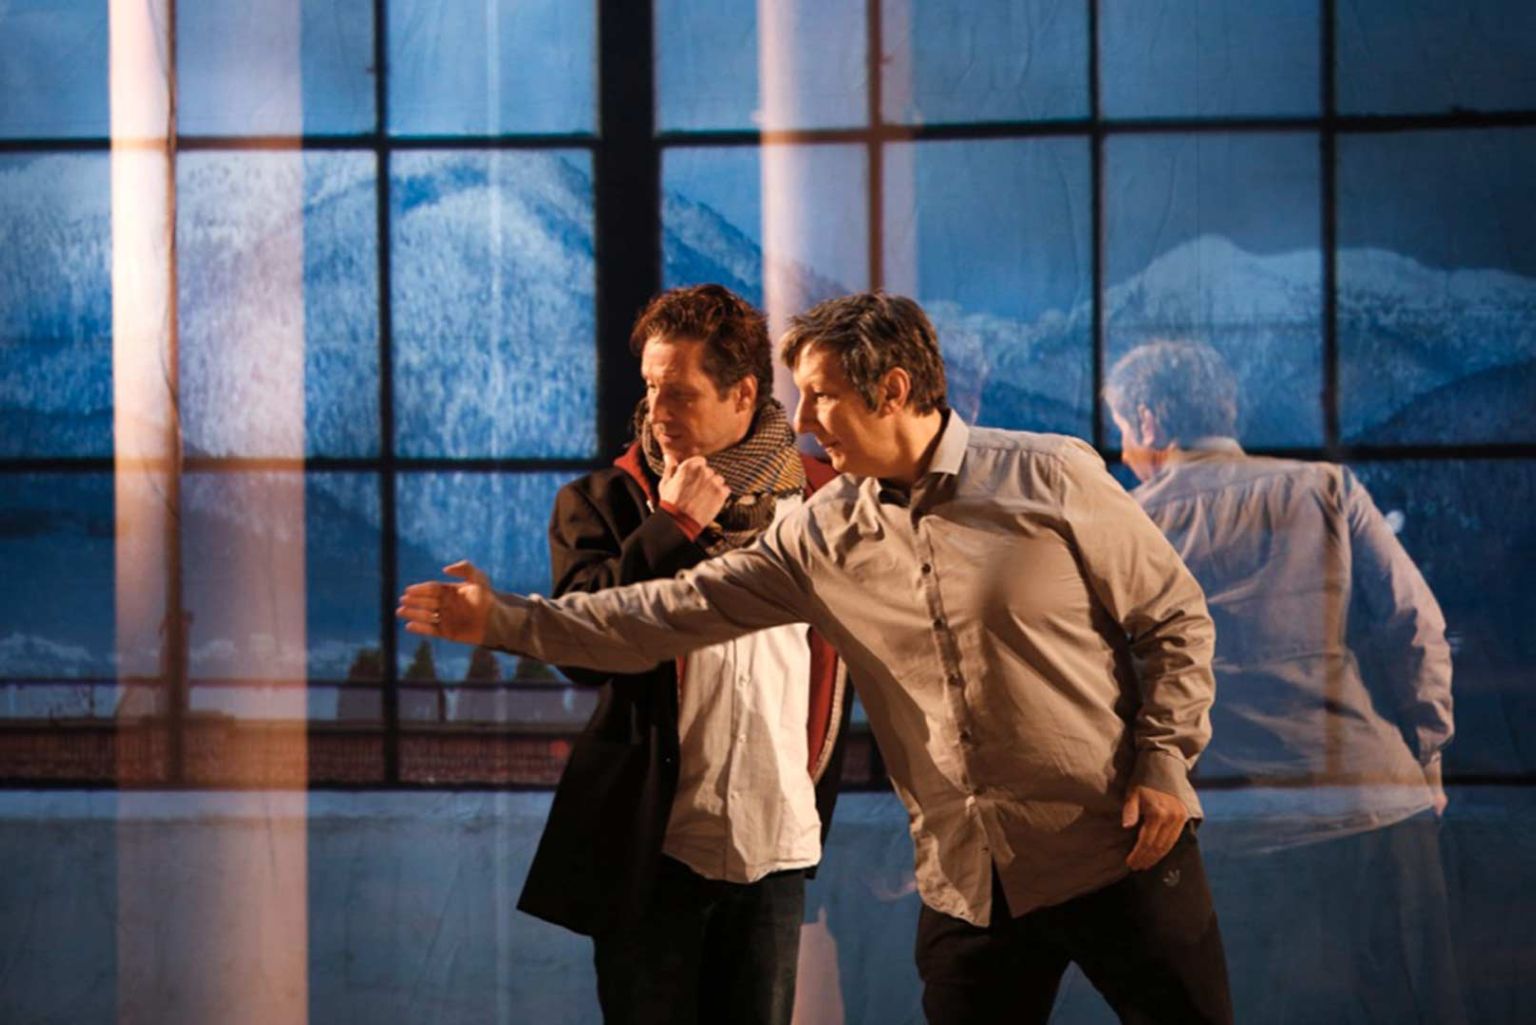  Robert Lepage con gli attori. Ph. Michèle Laurent, dal sito ufficiale del Théâtre du Soleil